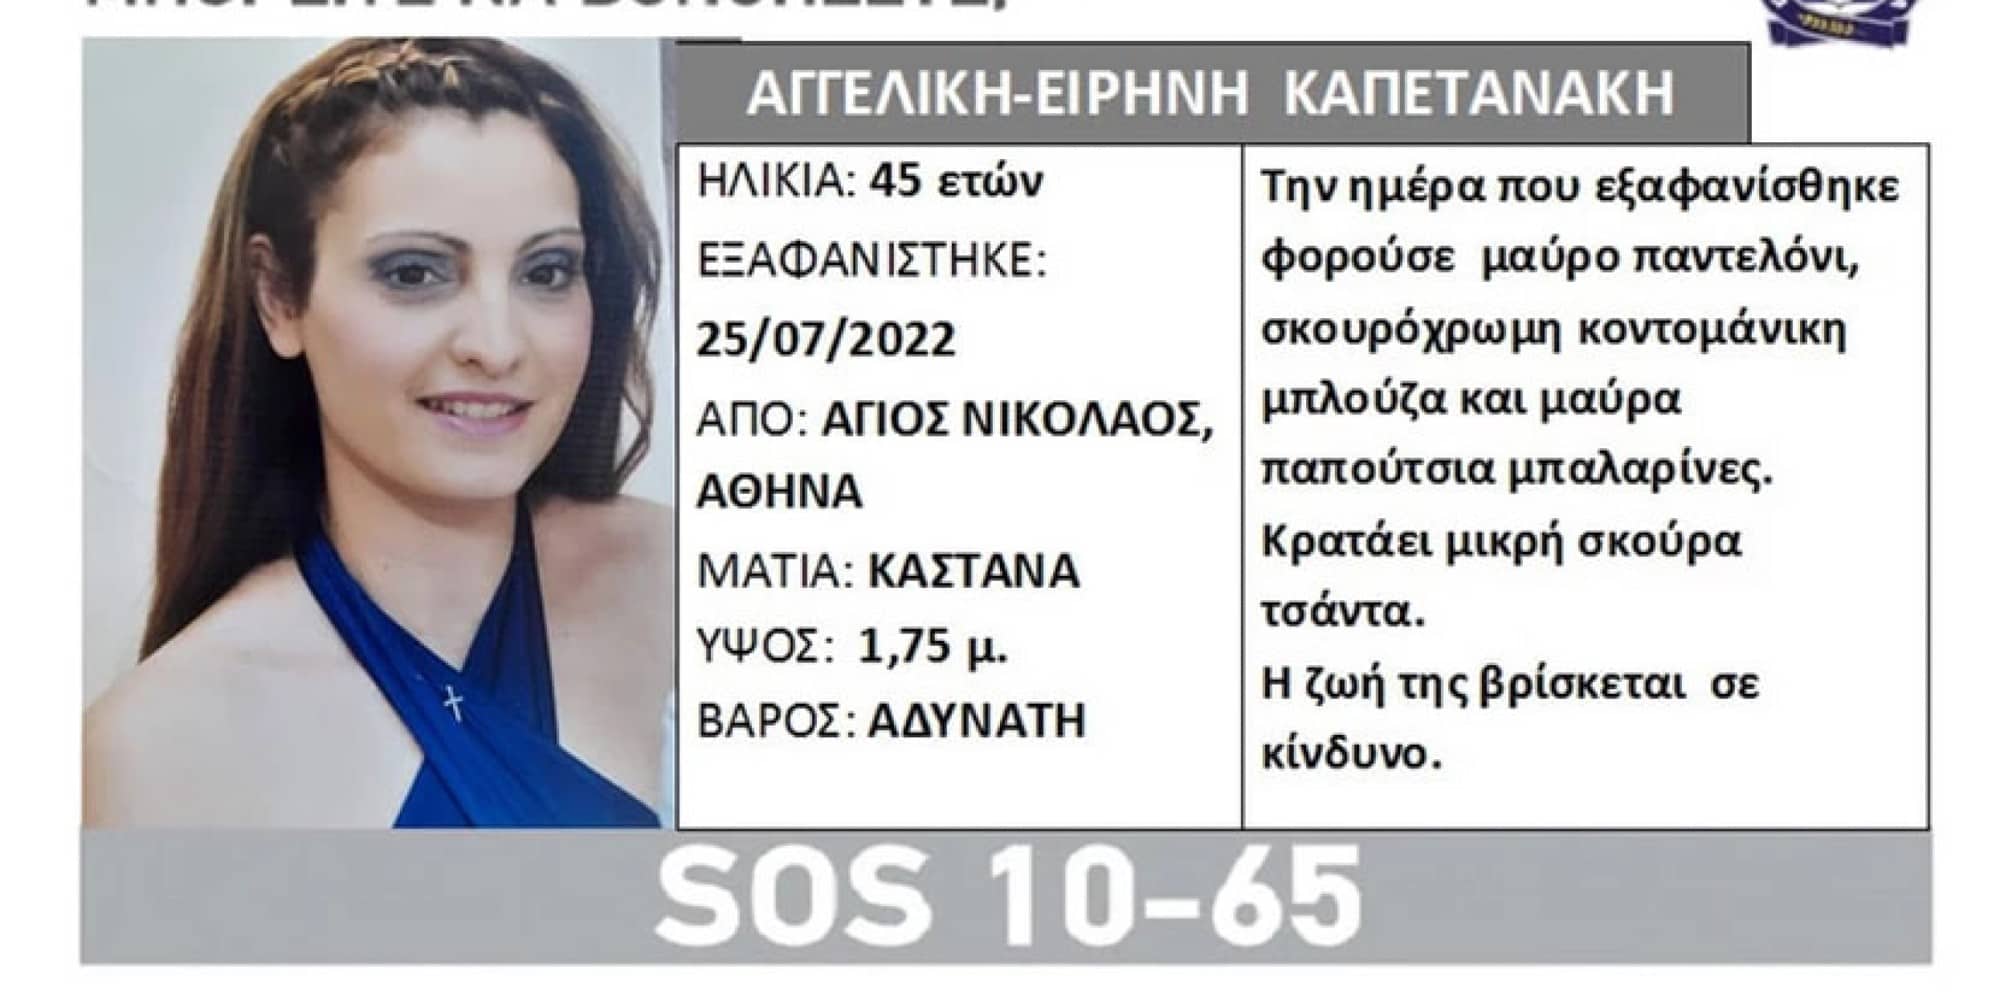 Η 45χρονη που εξαφανίστηκε από τον Άγιο Νικόλαο στην Αθήνα